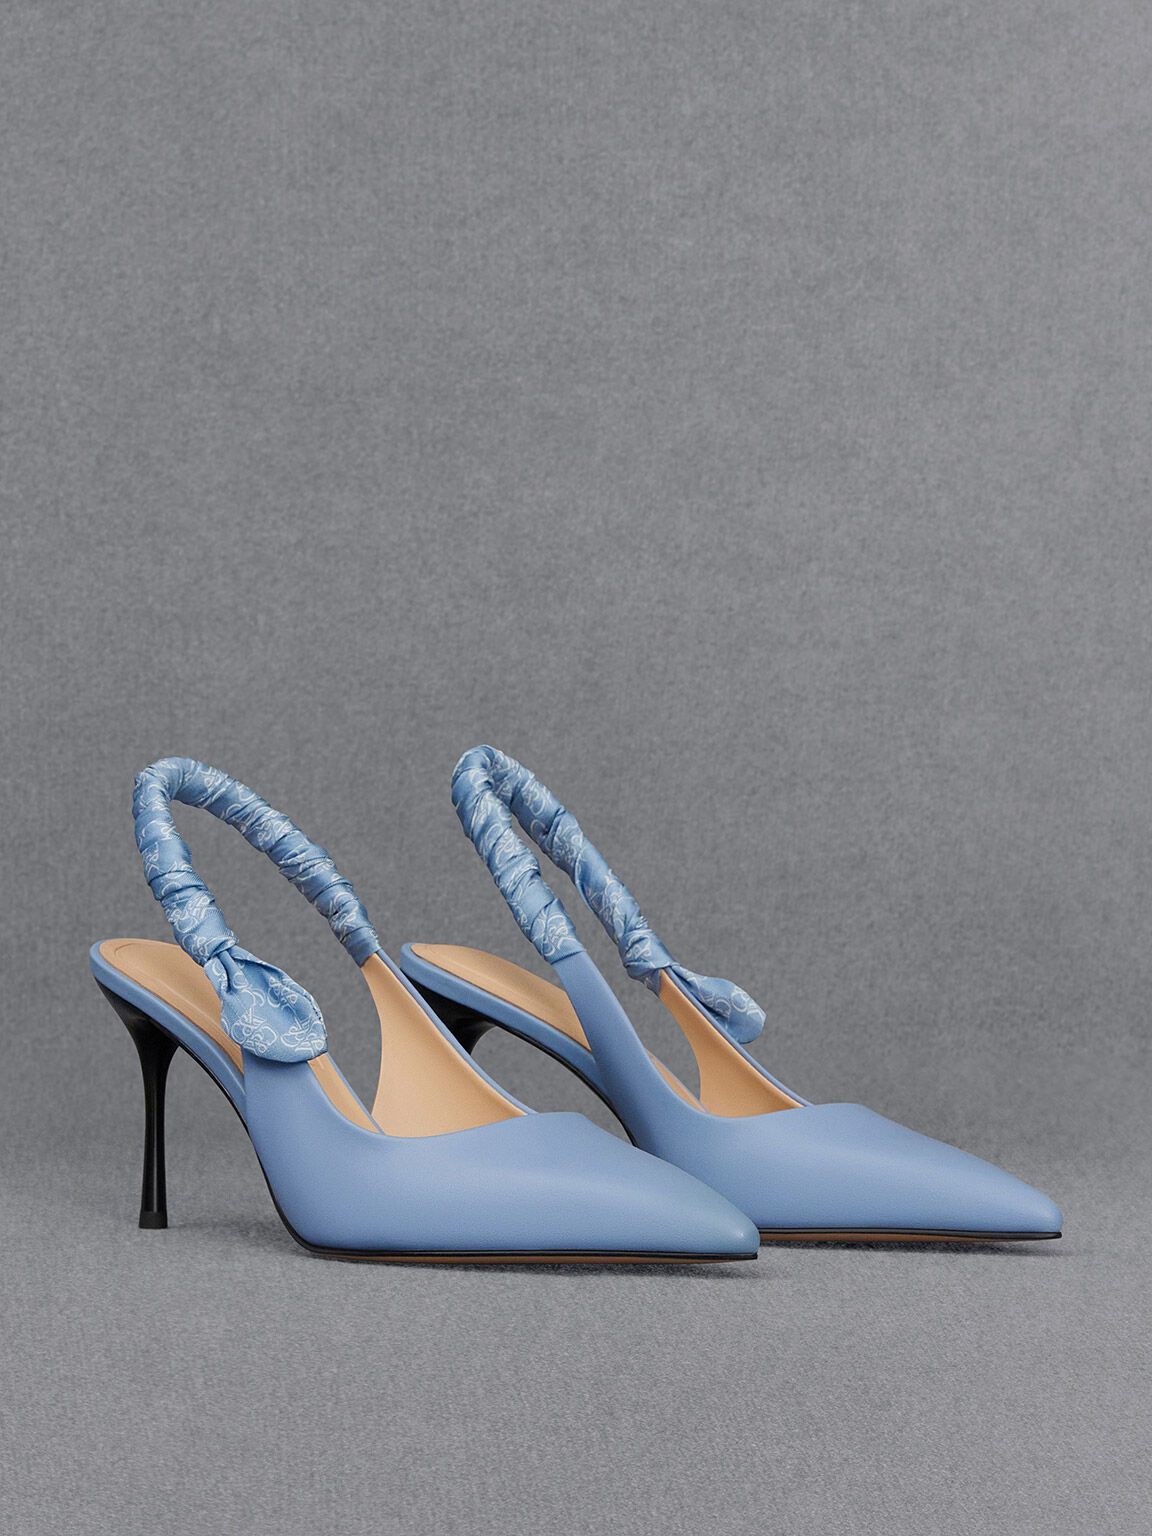 ZALLURE PINK High Heels | Buy Women's HEELS Online | Novo Shoes NZ